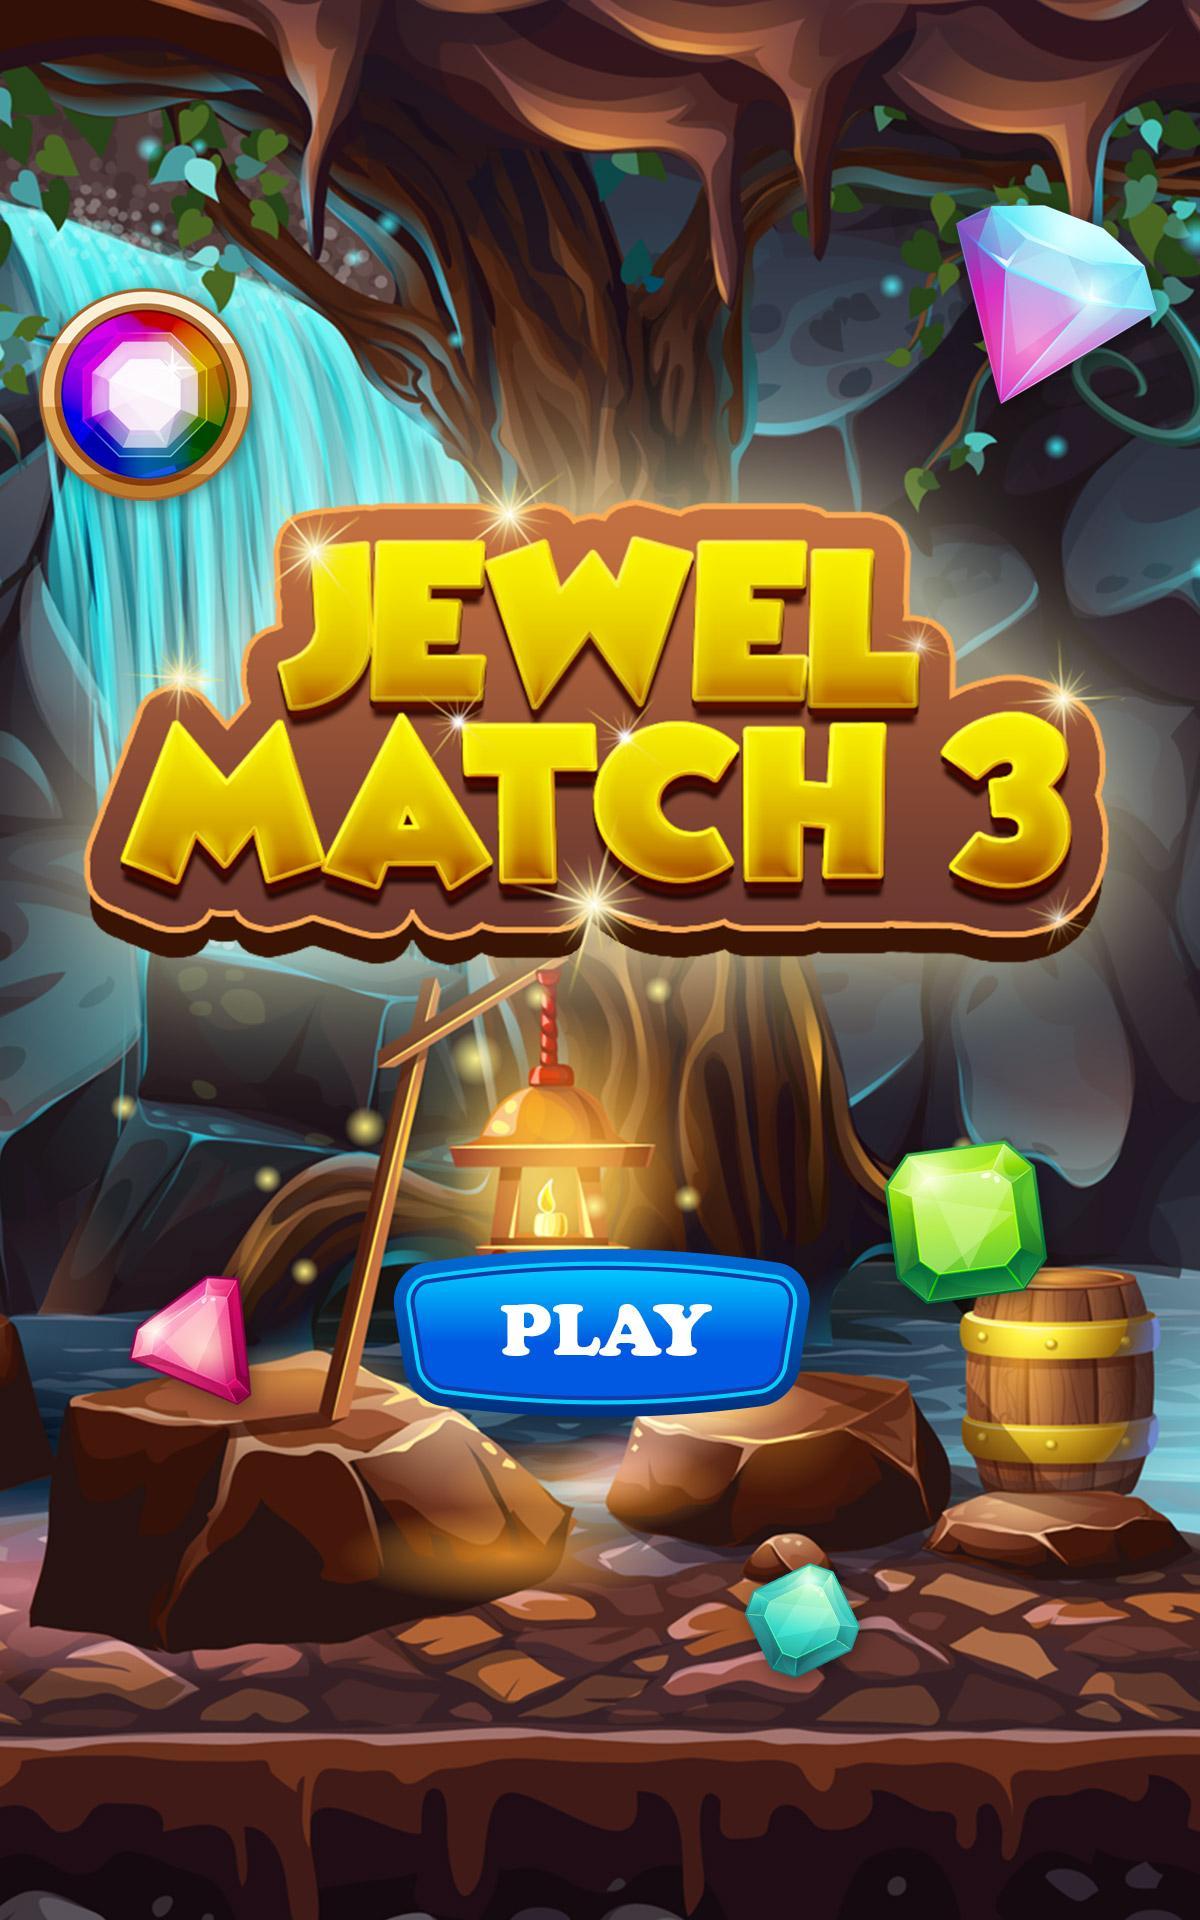 Jewel match. Match 3 игры. Джевел матч 3. Игра Jewel Match. Игры на андроид Jewels.